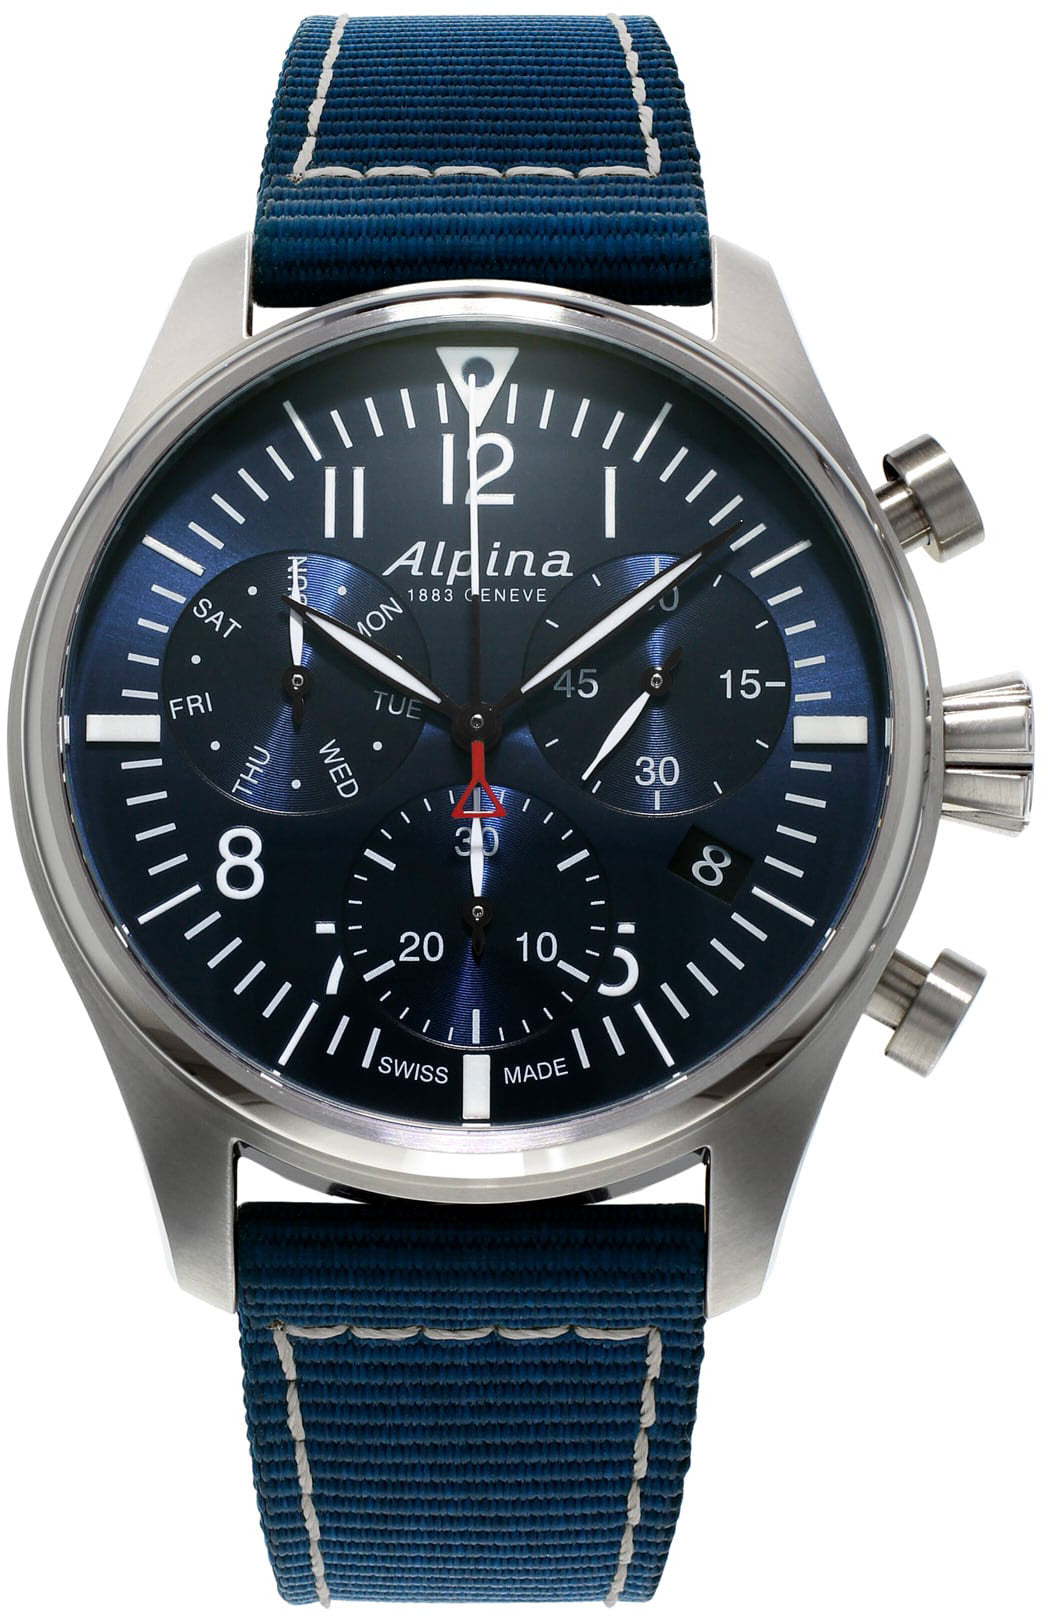 Photos - Wrist Watch Alpina Watch Startimer Pilot Chronograph Quartz D ALP-266 